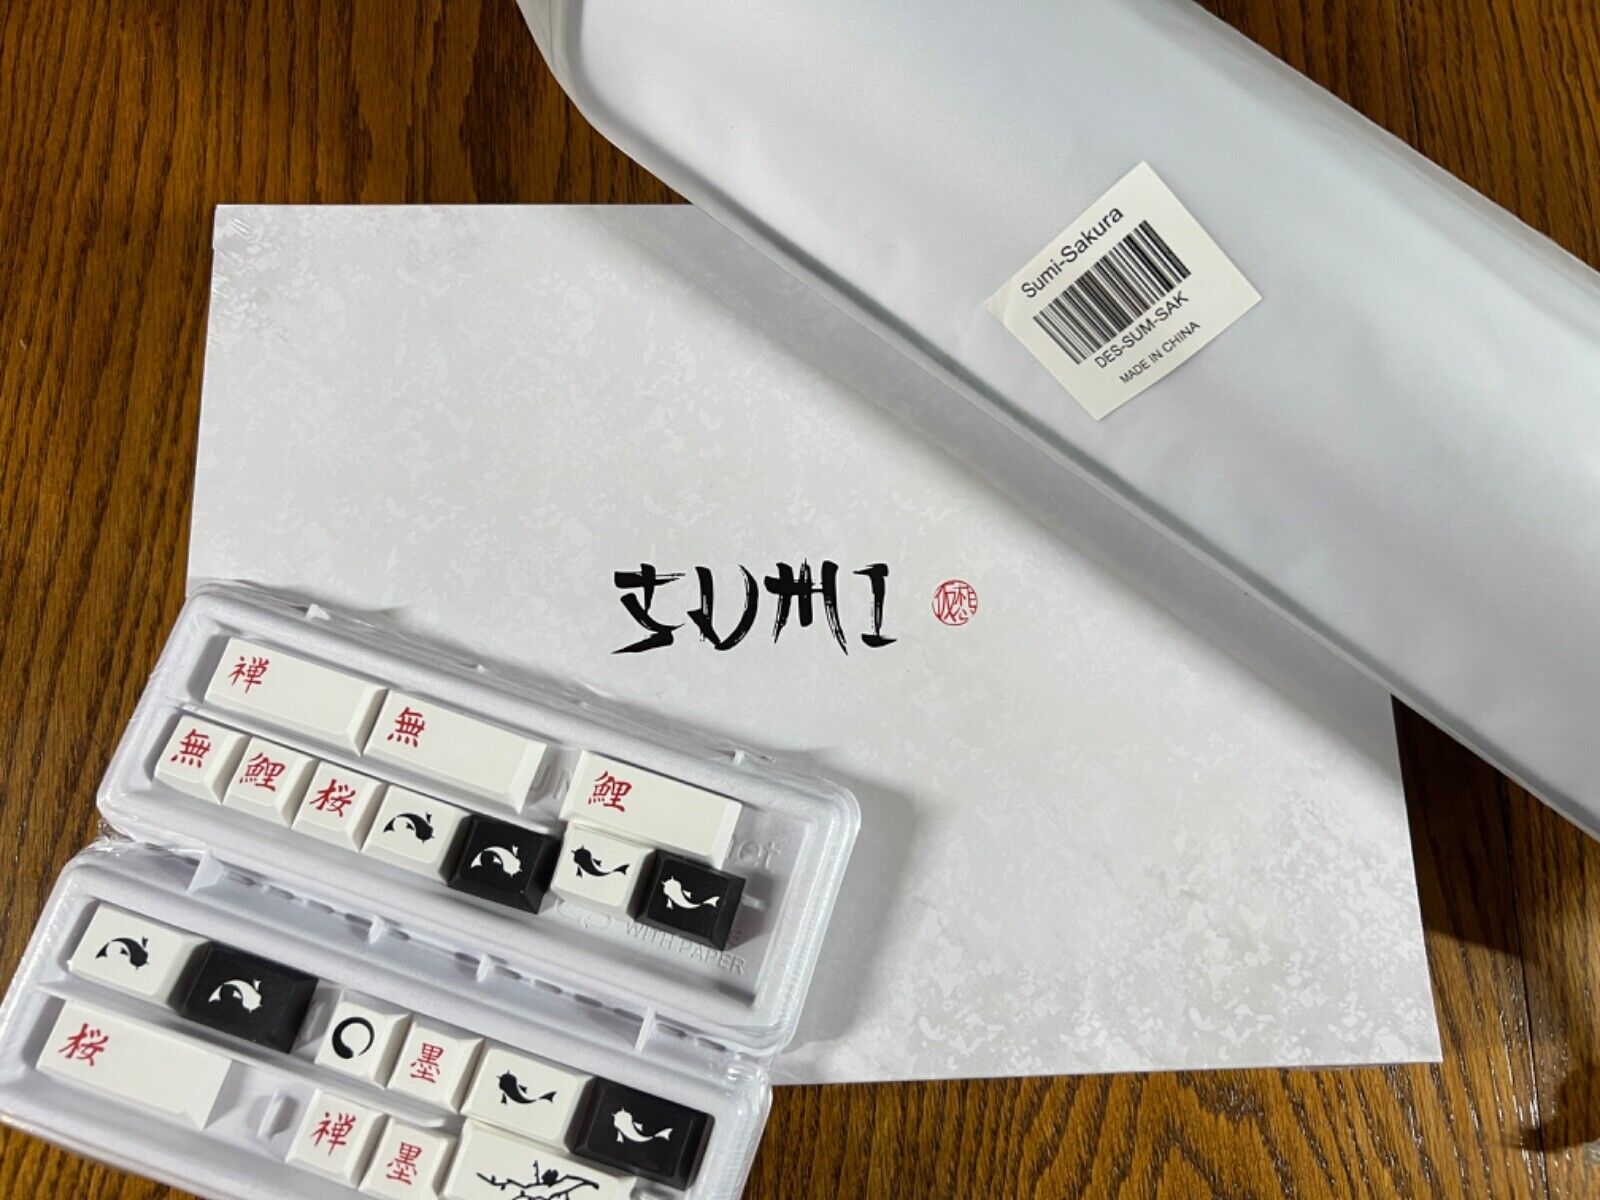 GMK Sumi Bundle (Base Kit, Novelties Kit, Sakura Desk Mat) - Sealed/BNIB